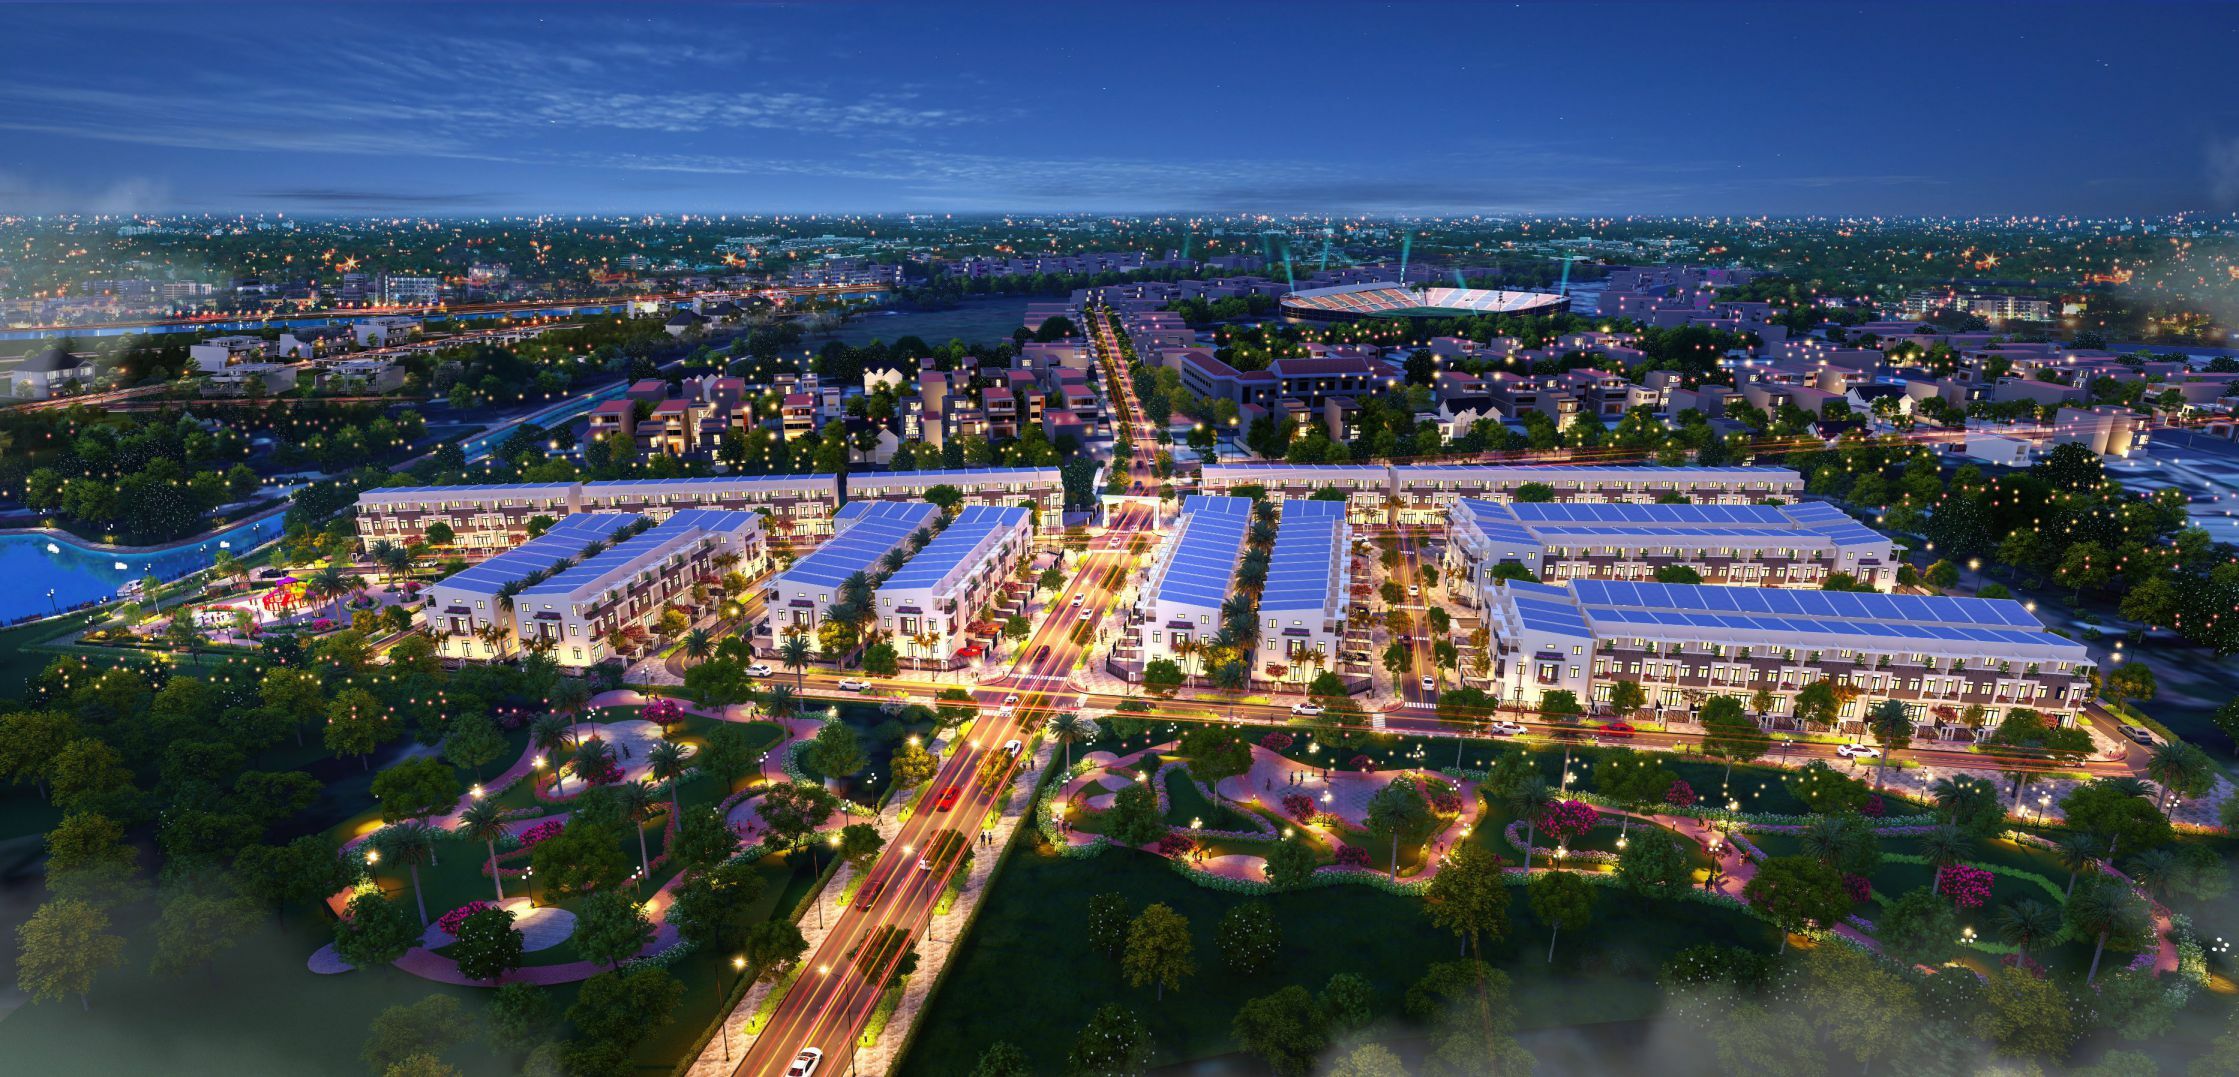 Dự án Thành Đô có tổng vốn đầu tư hơn 350 tỷ đồng được xây dựng theo mô hình khu đô thị thông minh.